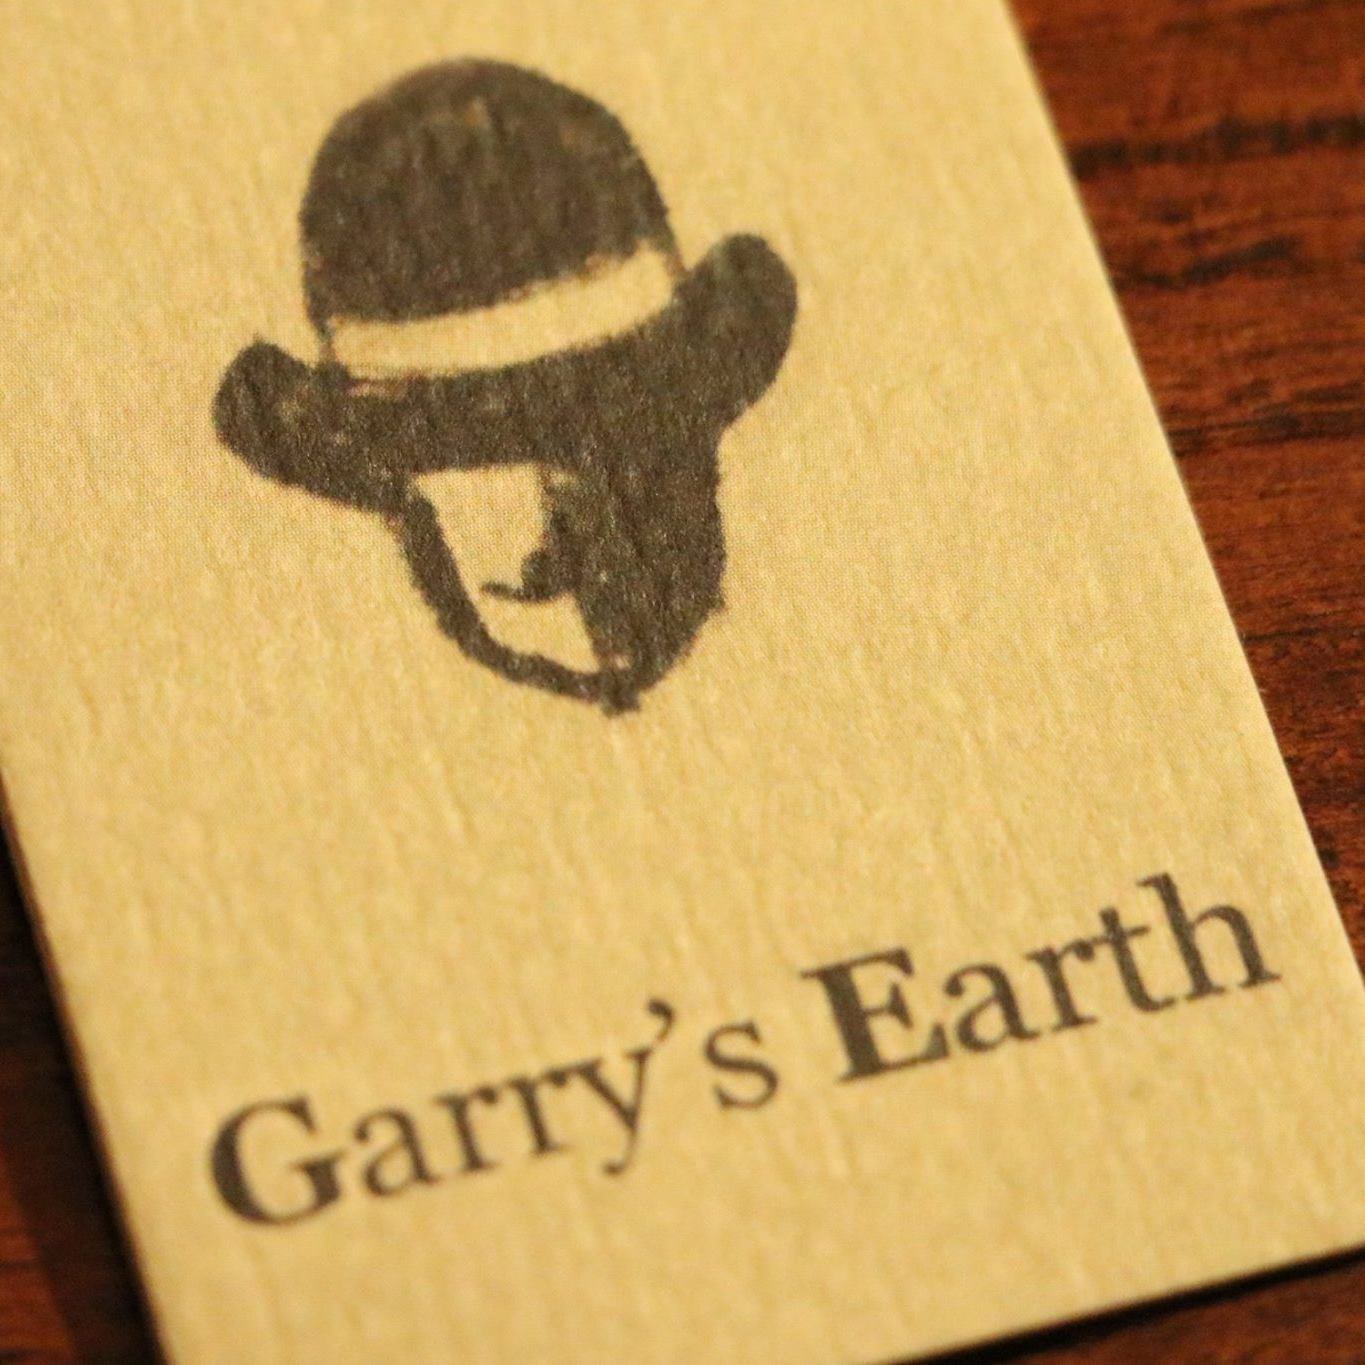 Garys-Earth